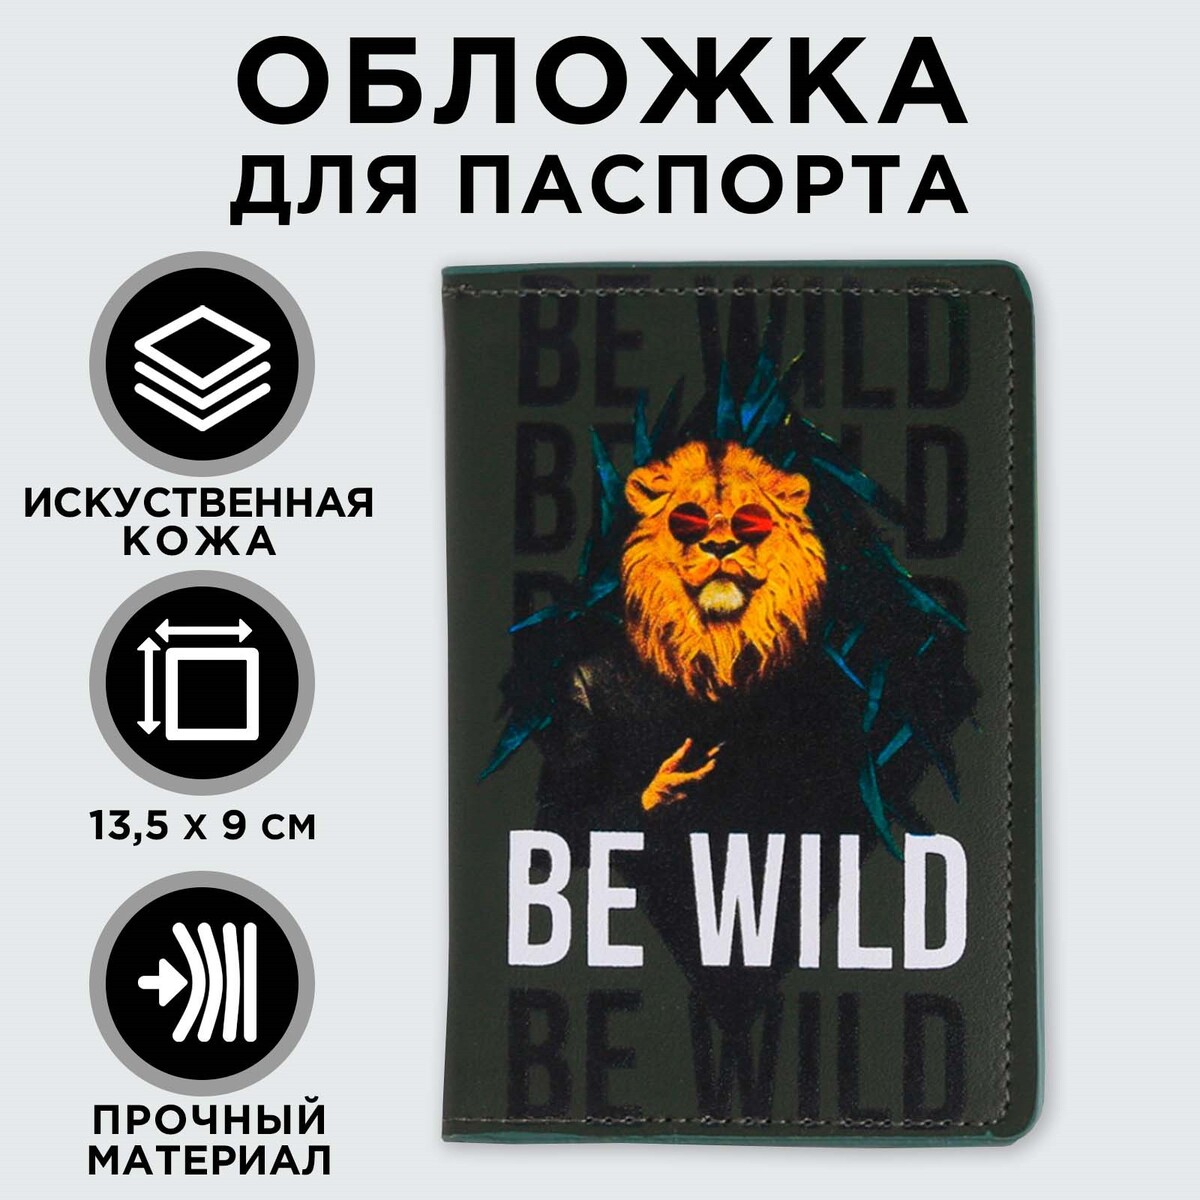 Обложка для паспорта с доп.карманом внутри be wild, искусственная кожа обложка для удостоверения с окном нат кожа бордо тип 2 спейс